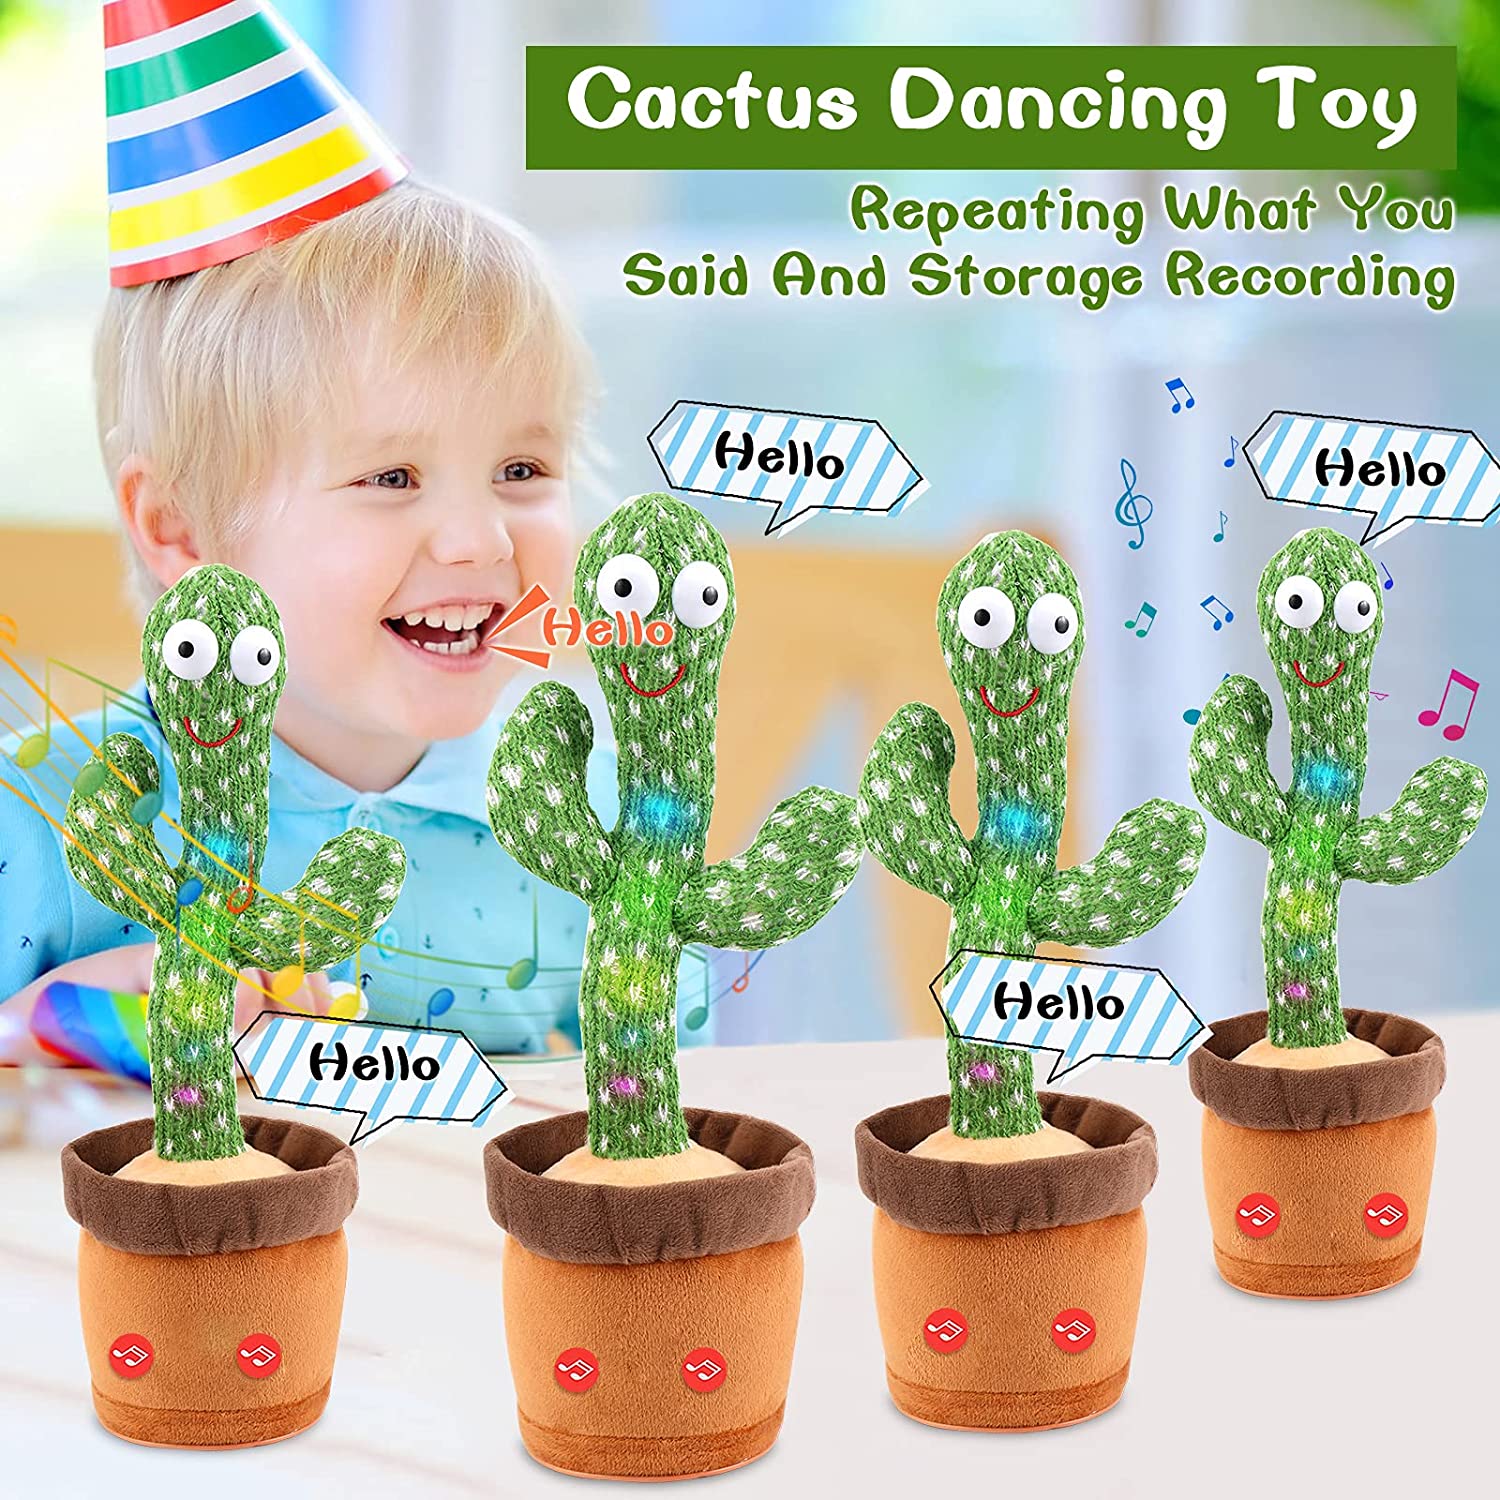 Dancing Cactus, jouet cactus parlant, ensoleillé Le cactus répète